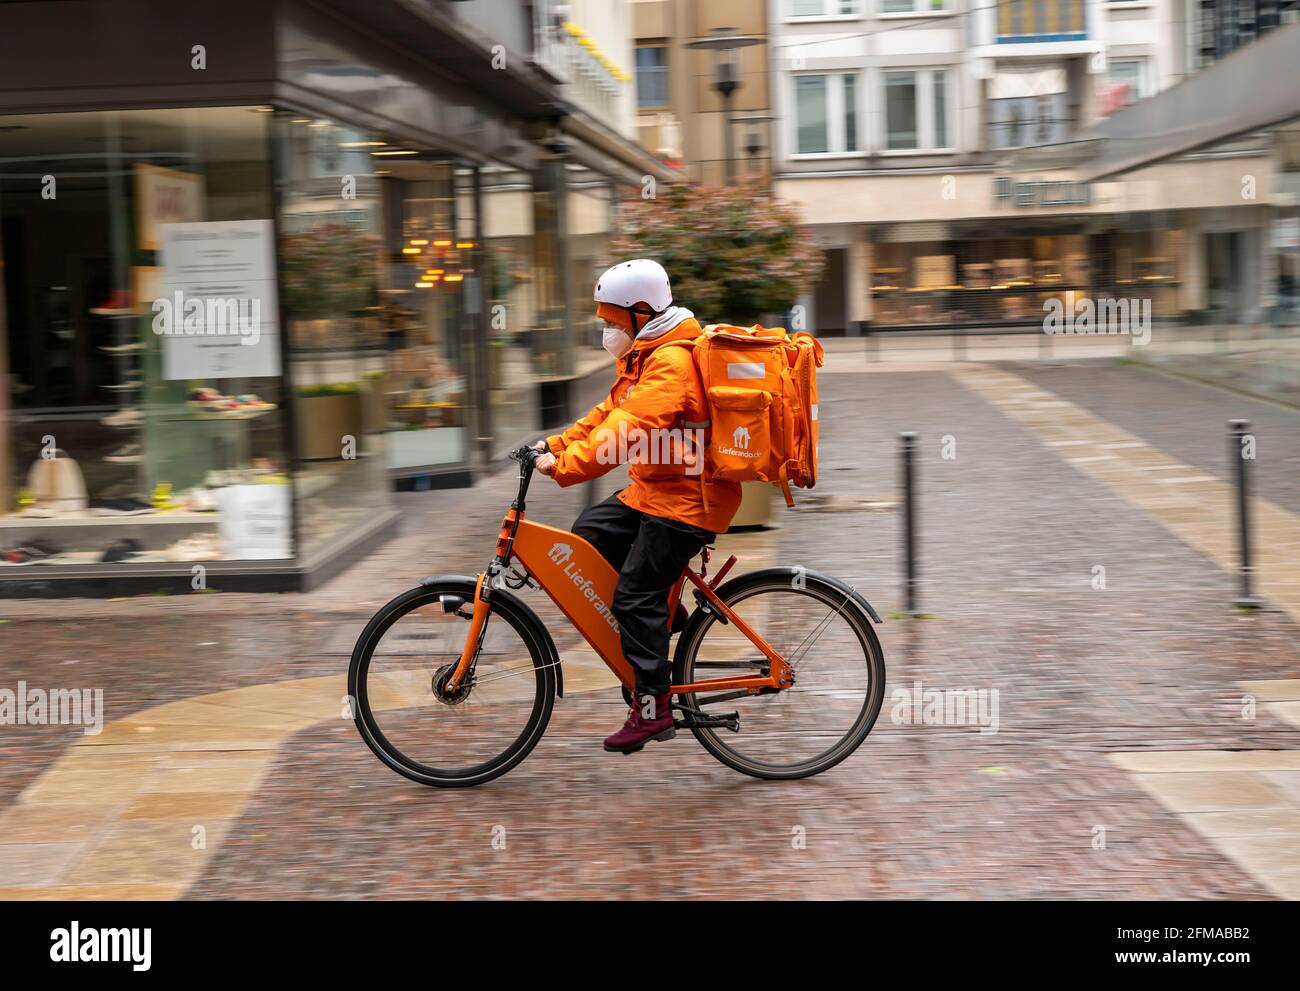 Servicio de entrega Lieferando.de, mensajería de entrega con las empresas bicicleta en el centro de la ciudad, Rathenaustrasse, en Essen, NRW Alemania, Foto de stock